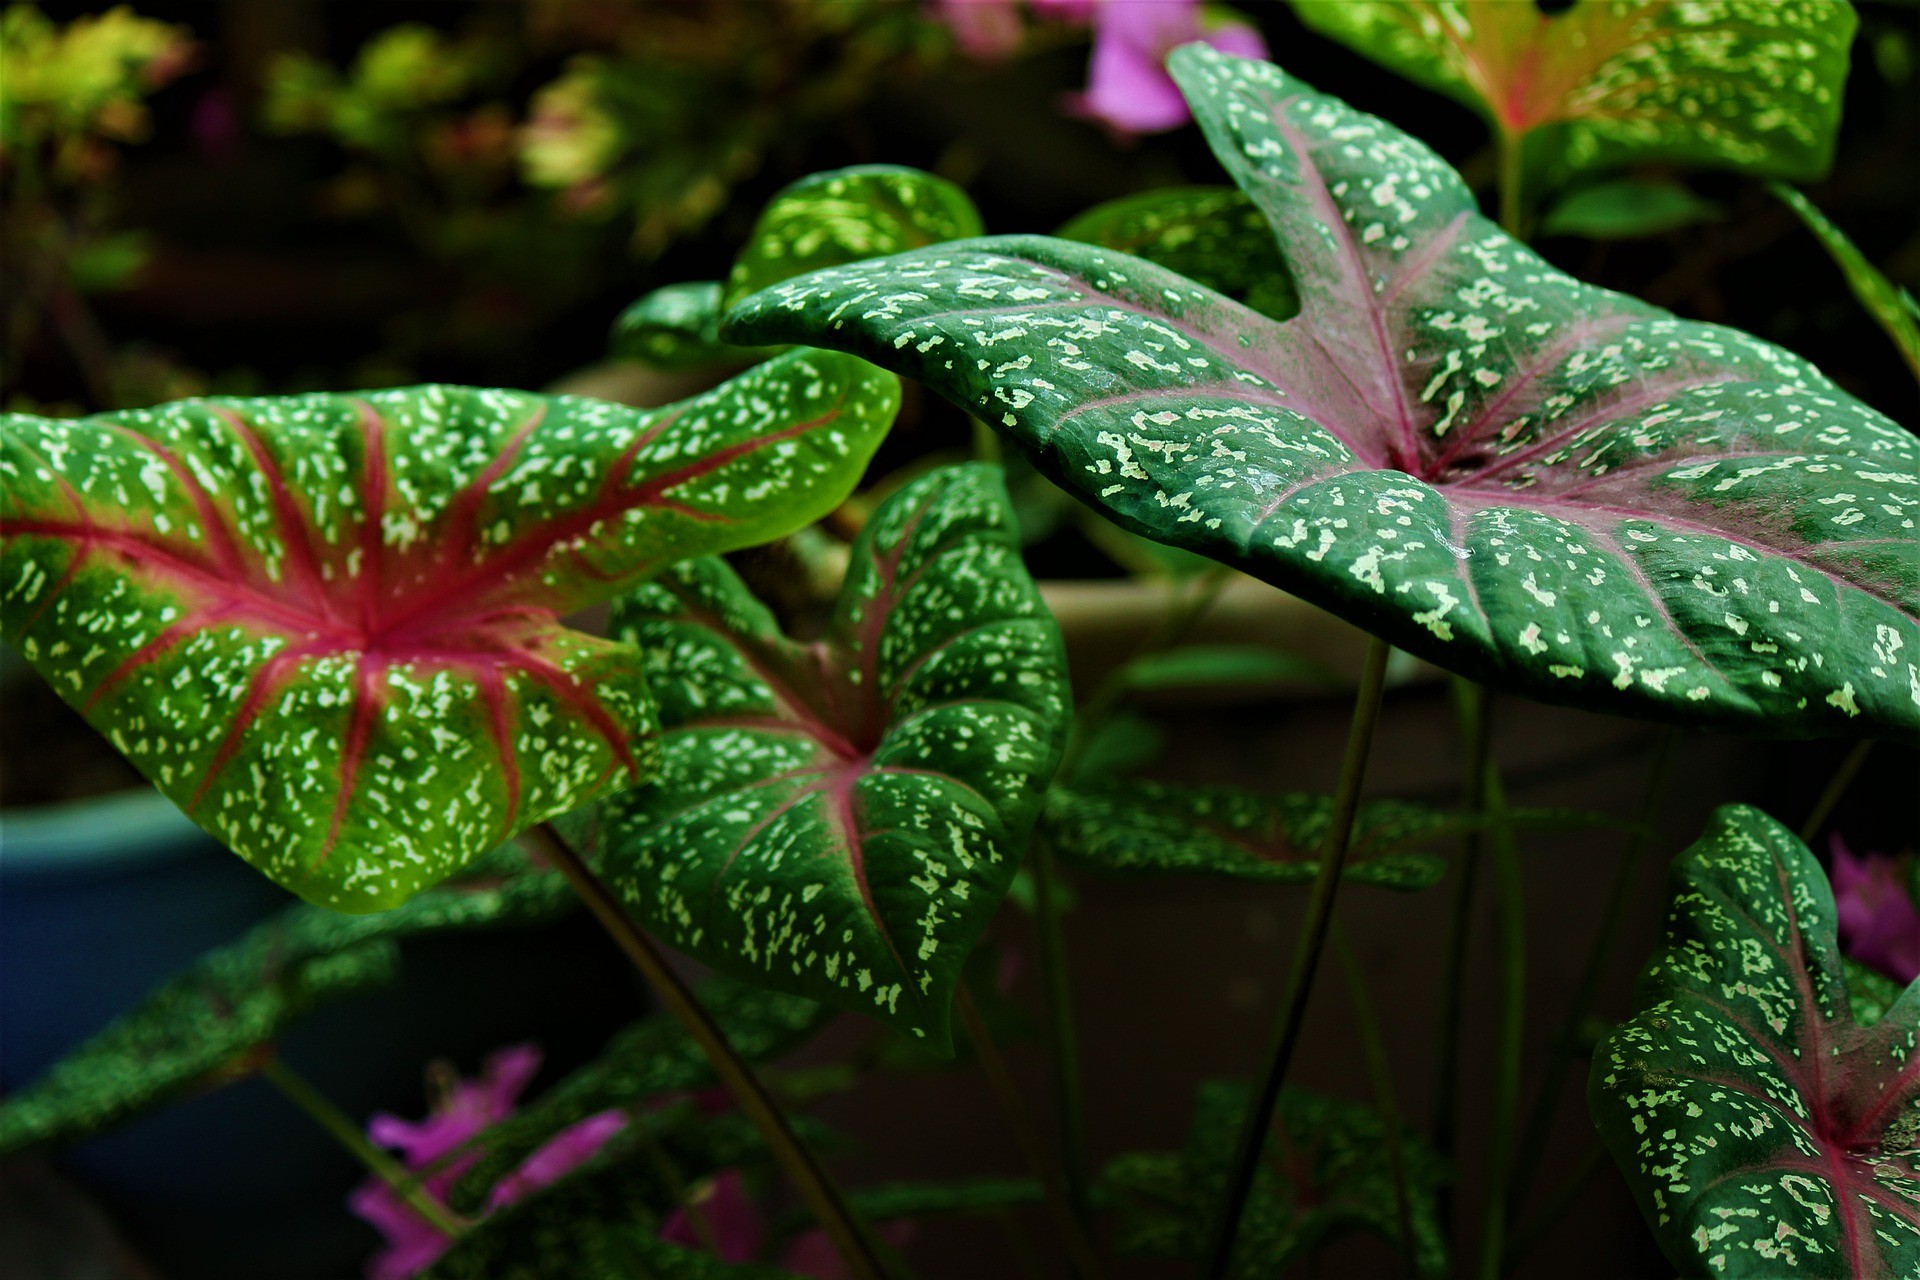 Conheça a caladium, planta ornamental colorida e perfeita para a decoração (Foto: Pixabay)